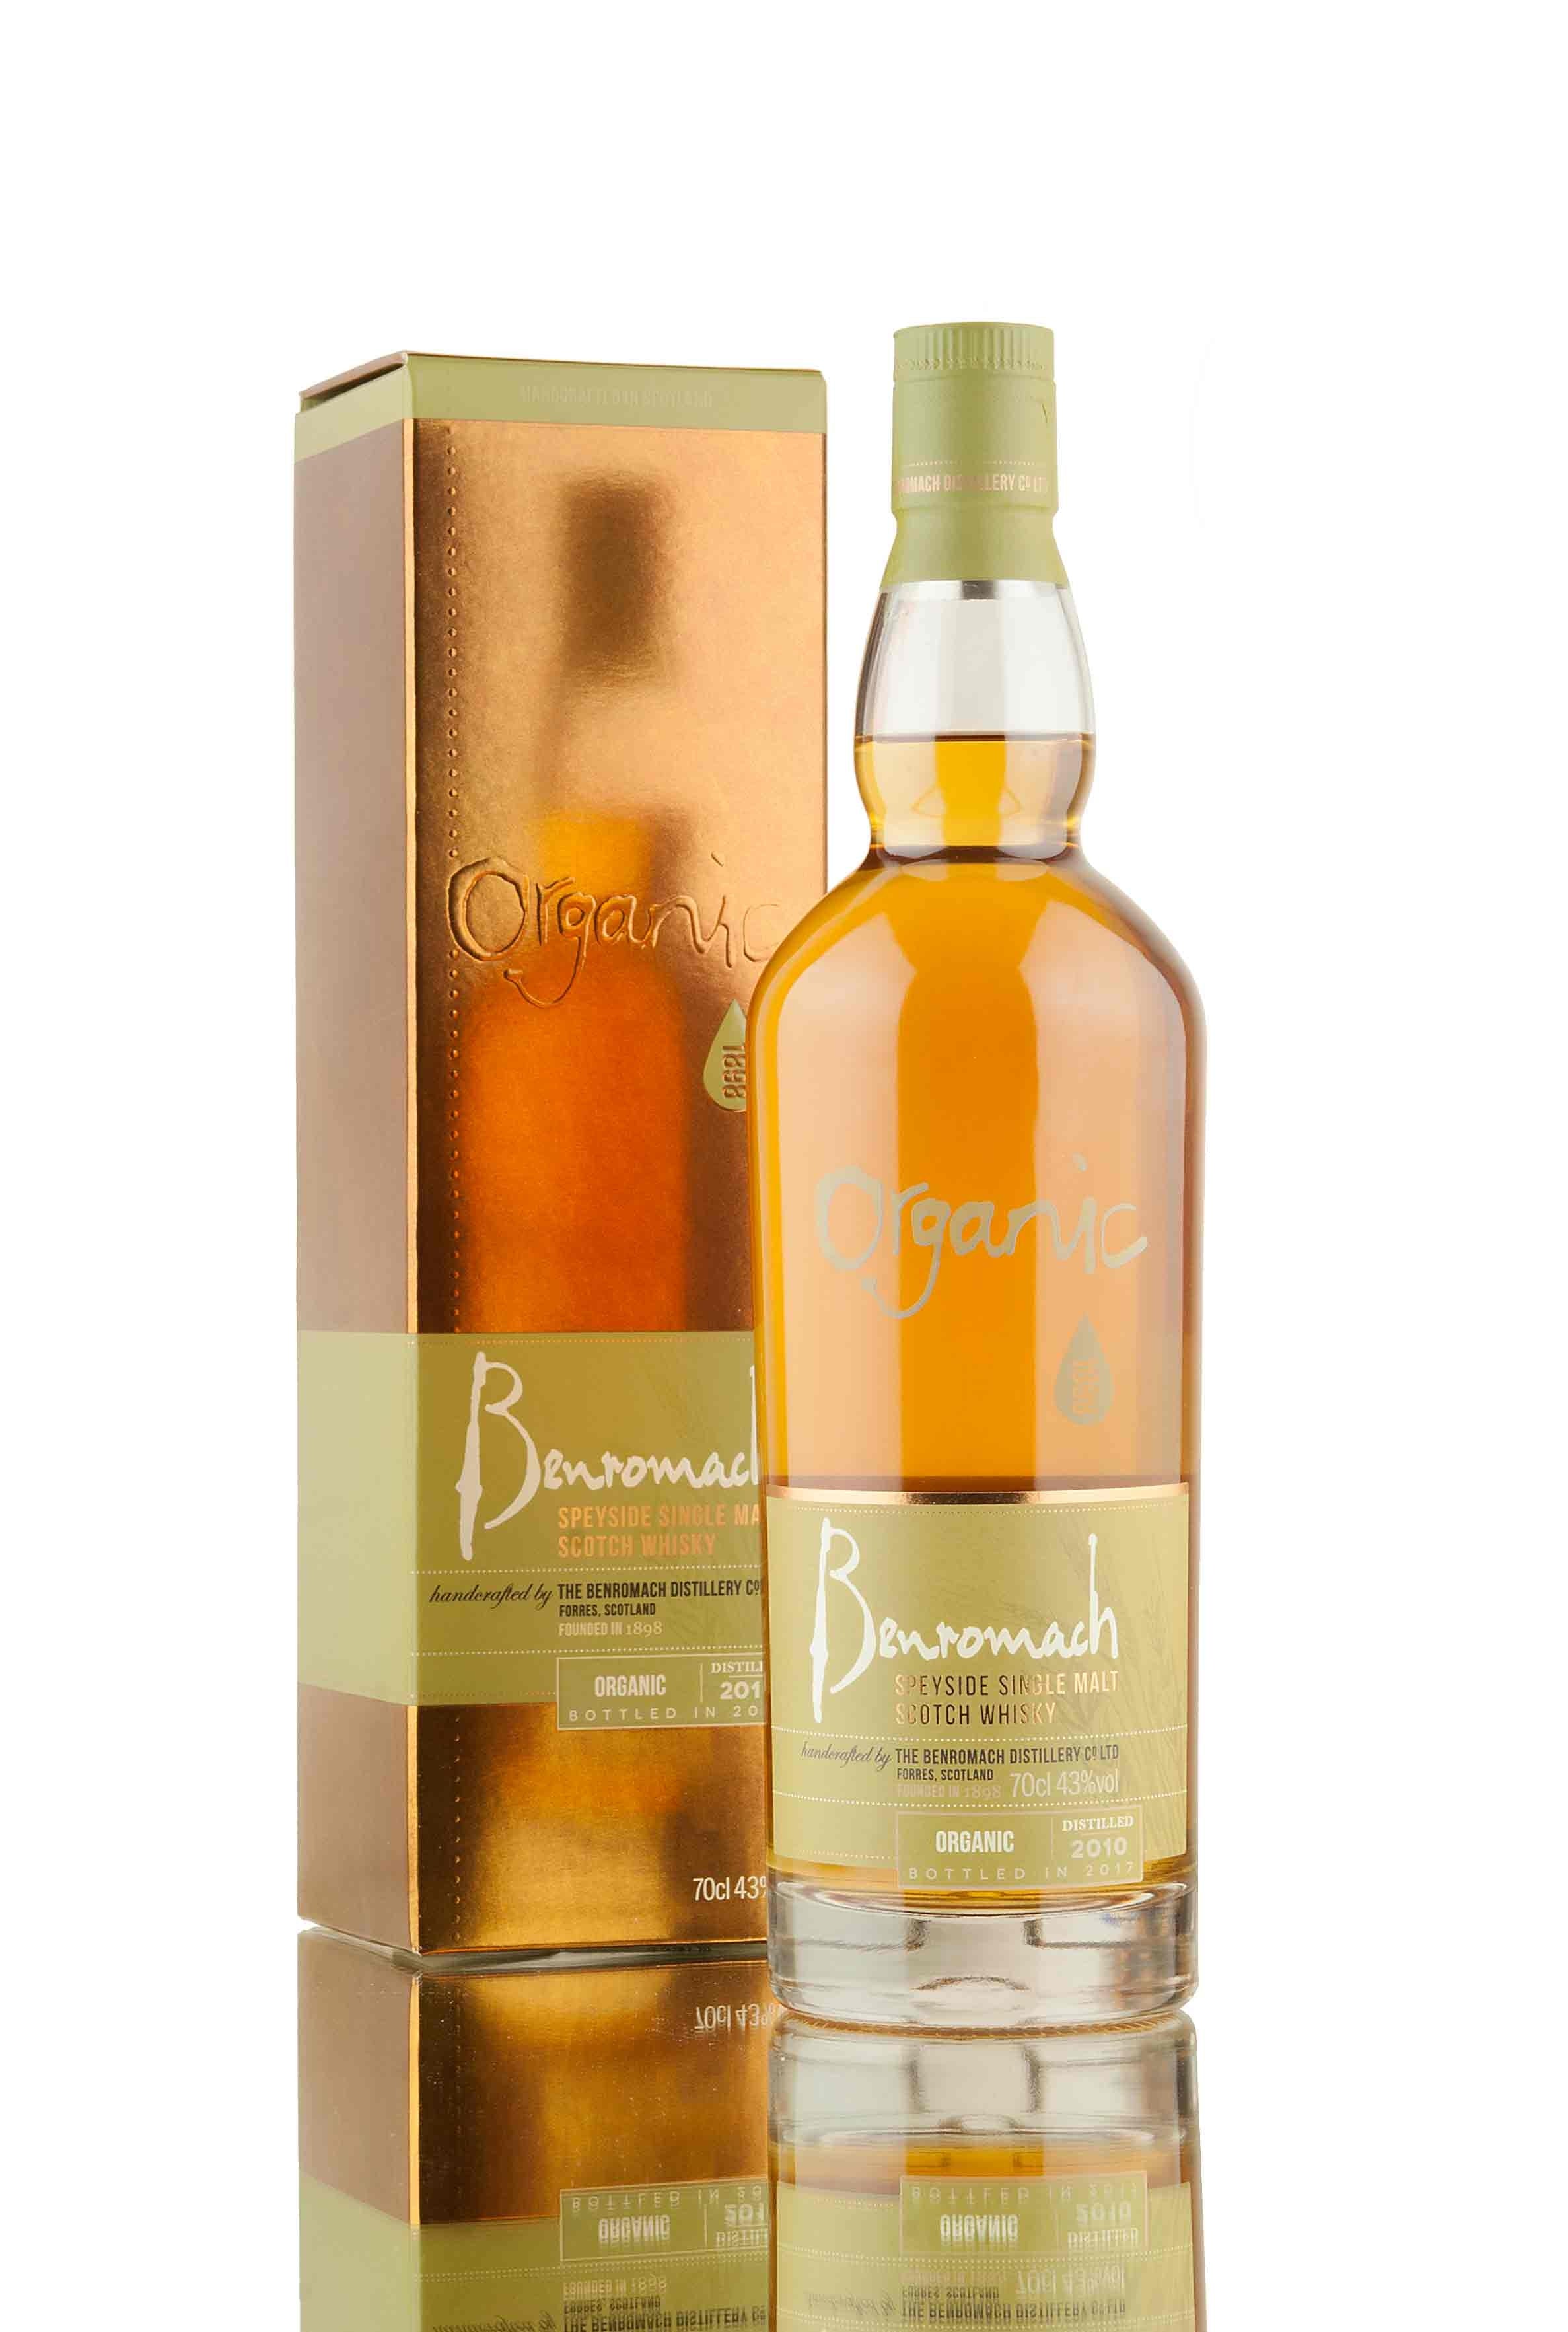 Benromach Organic 2010 | Bottled 2017